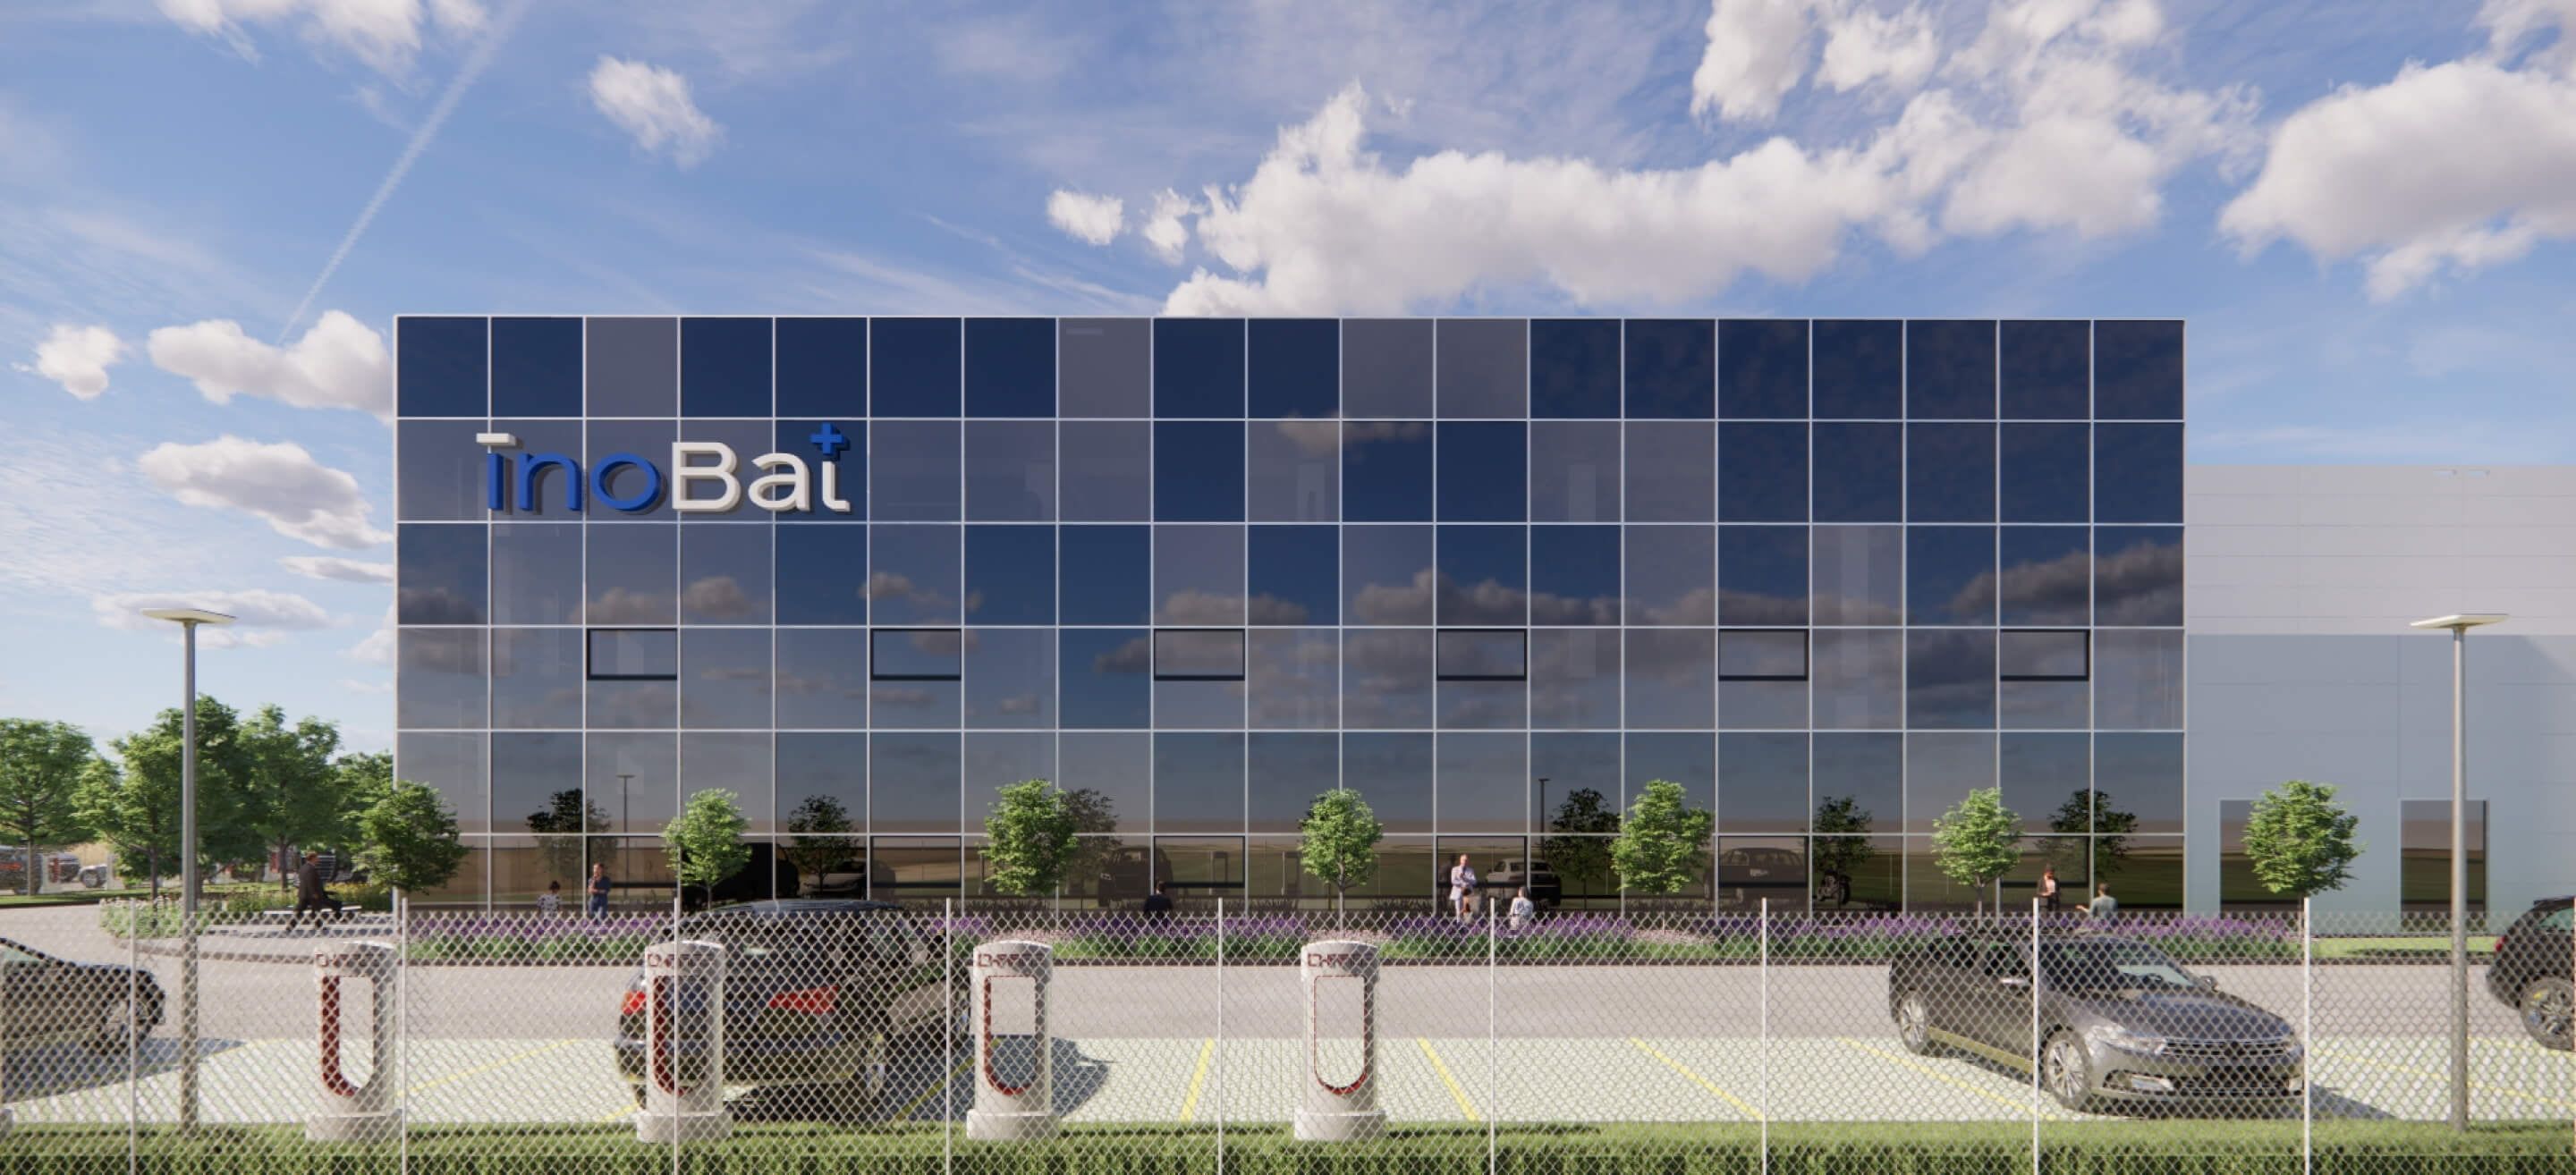 La firma de baterías eslovaca Inobat ve con buenos ojos la ciudad de Valladolid para su próxima planta.